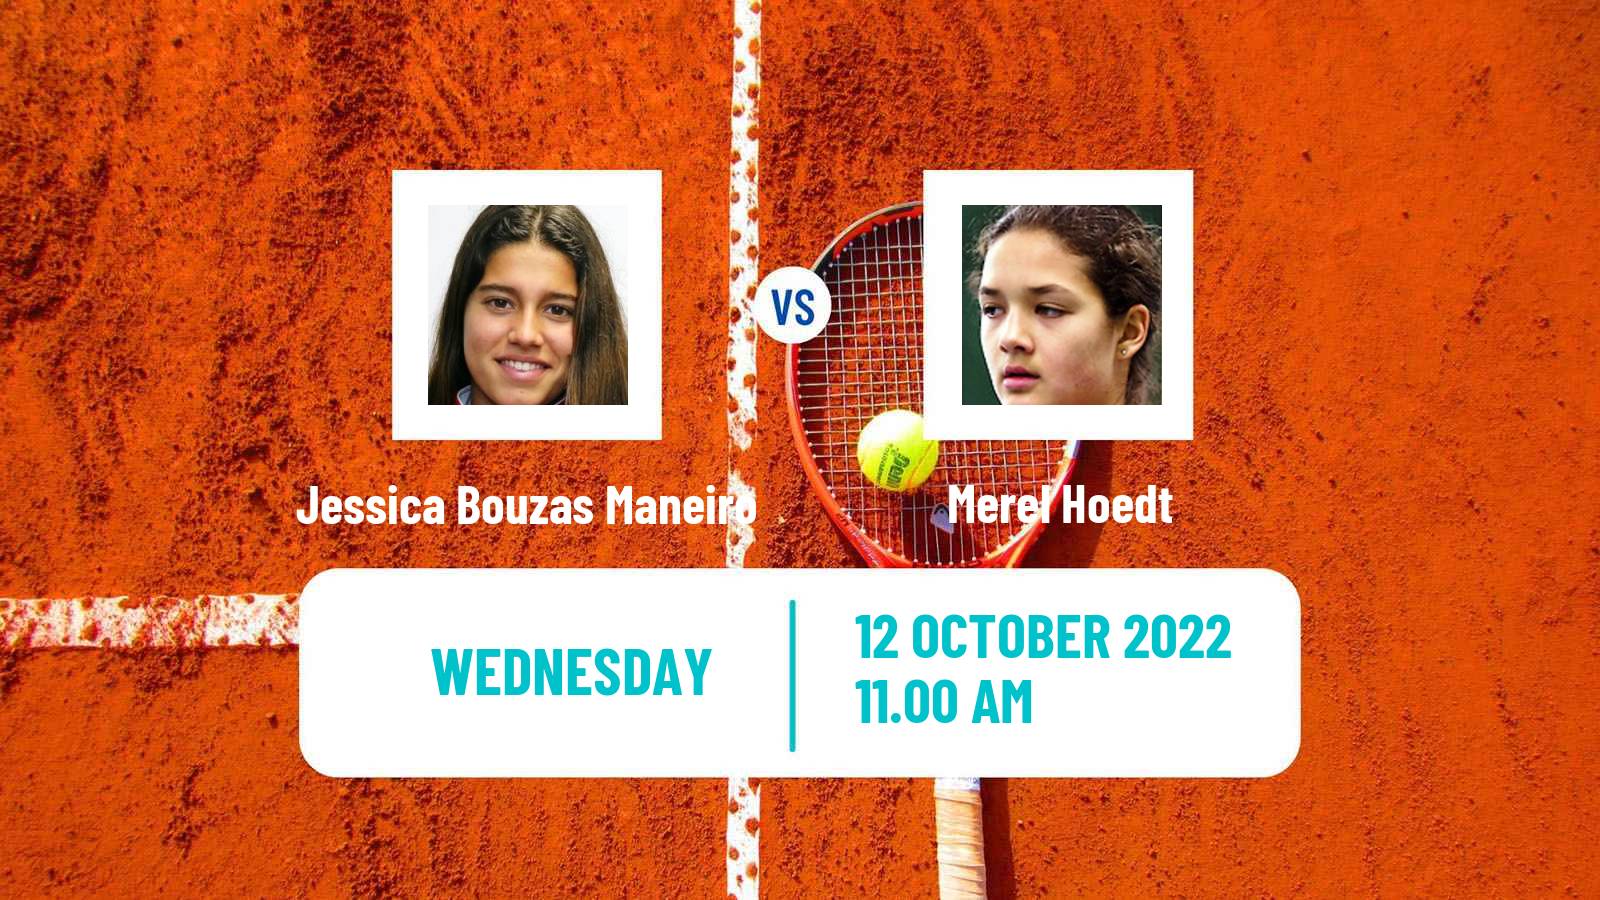 Tennis ITF Tournaments Jessica Bouzas Maneiro - Merel Hoedt